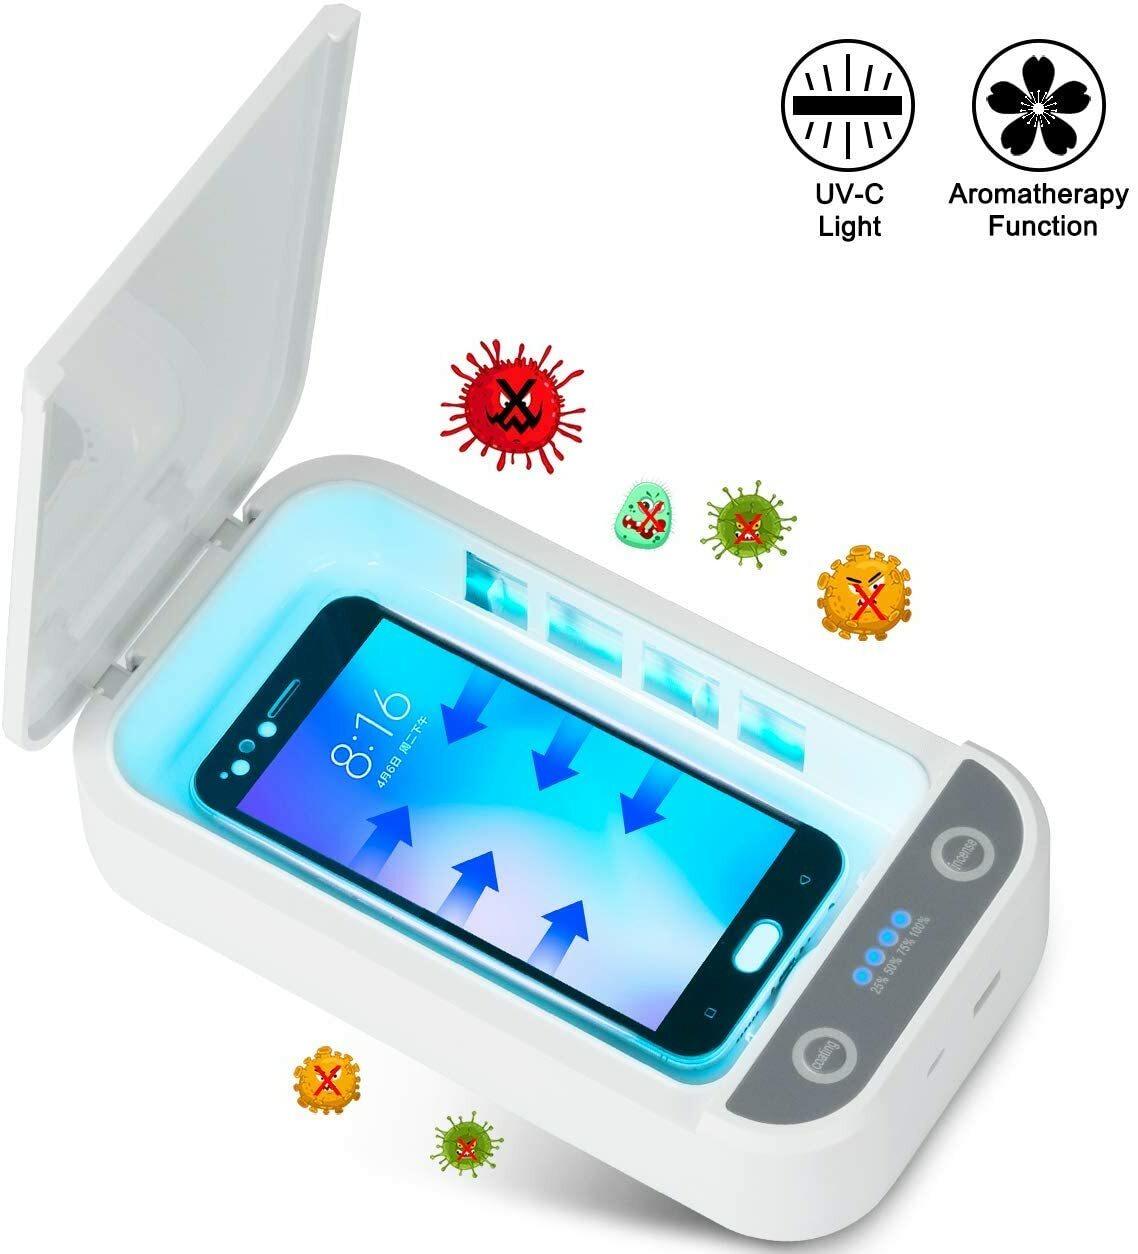 Mixnon Esterilizador UV para teléfono móvil caja de desinfección multifuncional UV y ozono,barra desinfectante extraíble,caja desinfectante de ozono,para teléfono móvil,herramientas de maquillaje